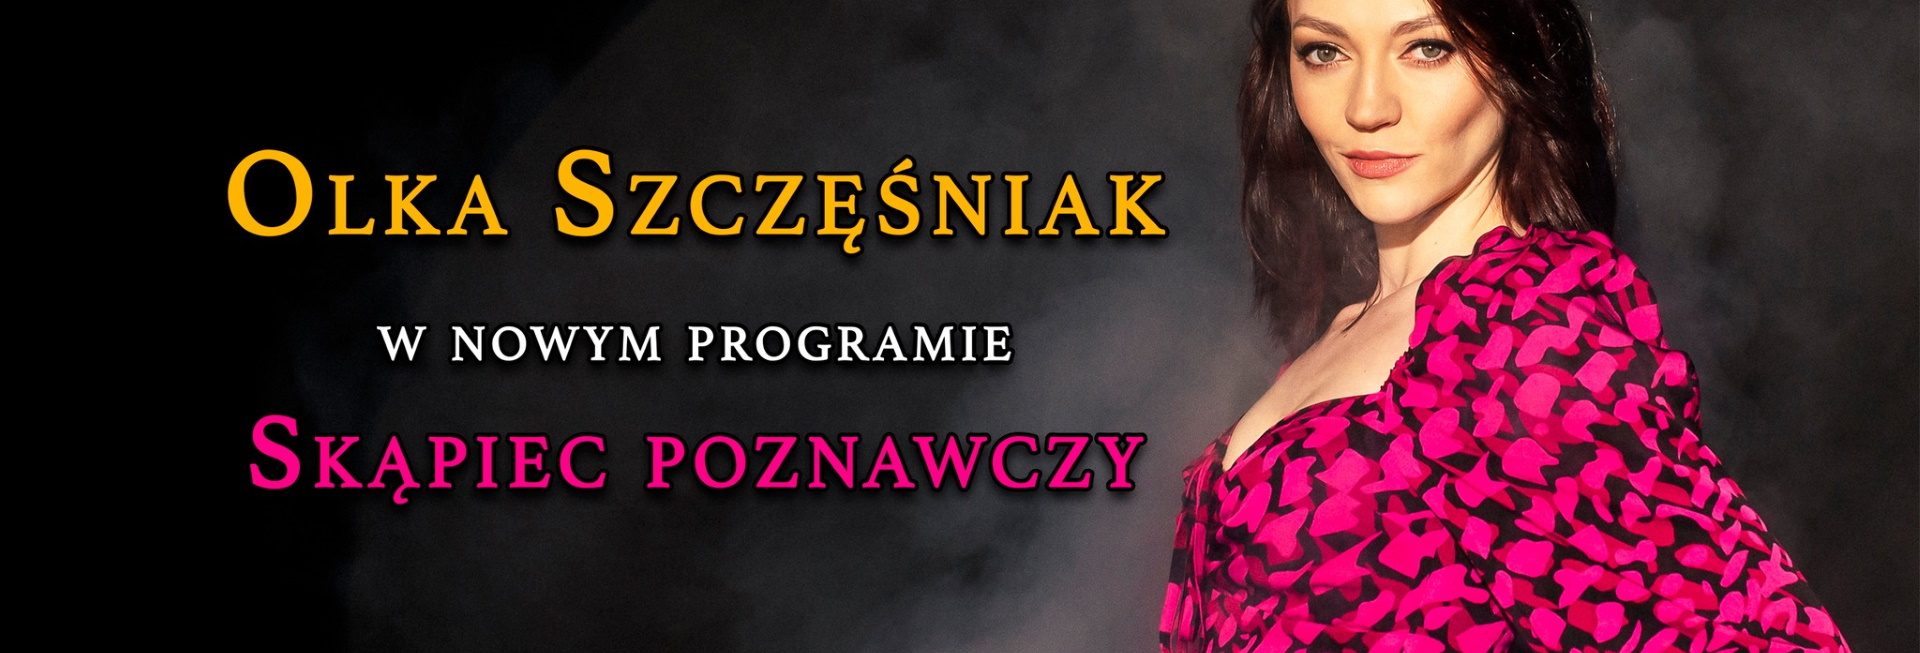 Plakat zapraszający na występ Stand-up Olka Szczęśniak 2023.